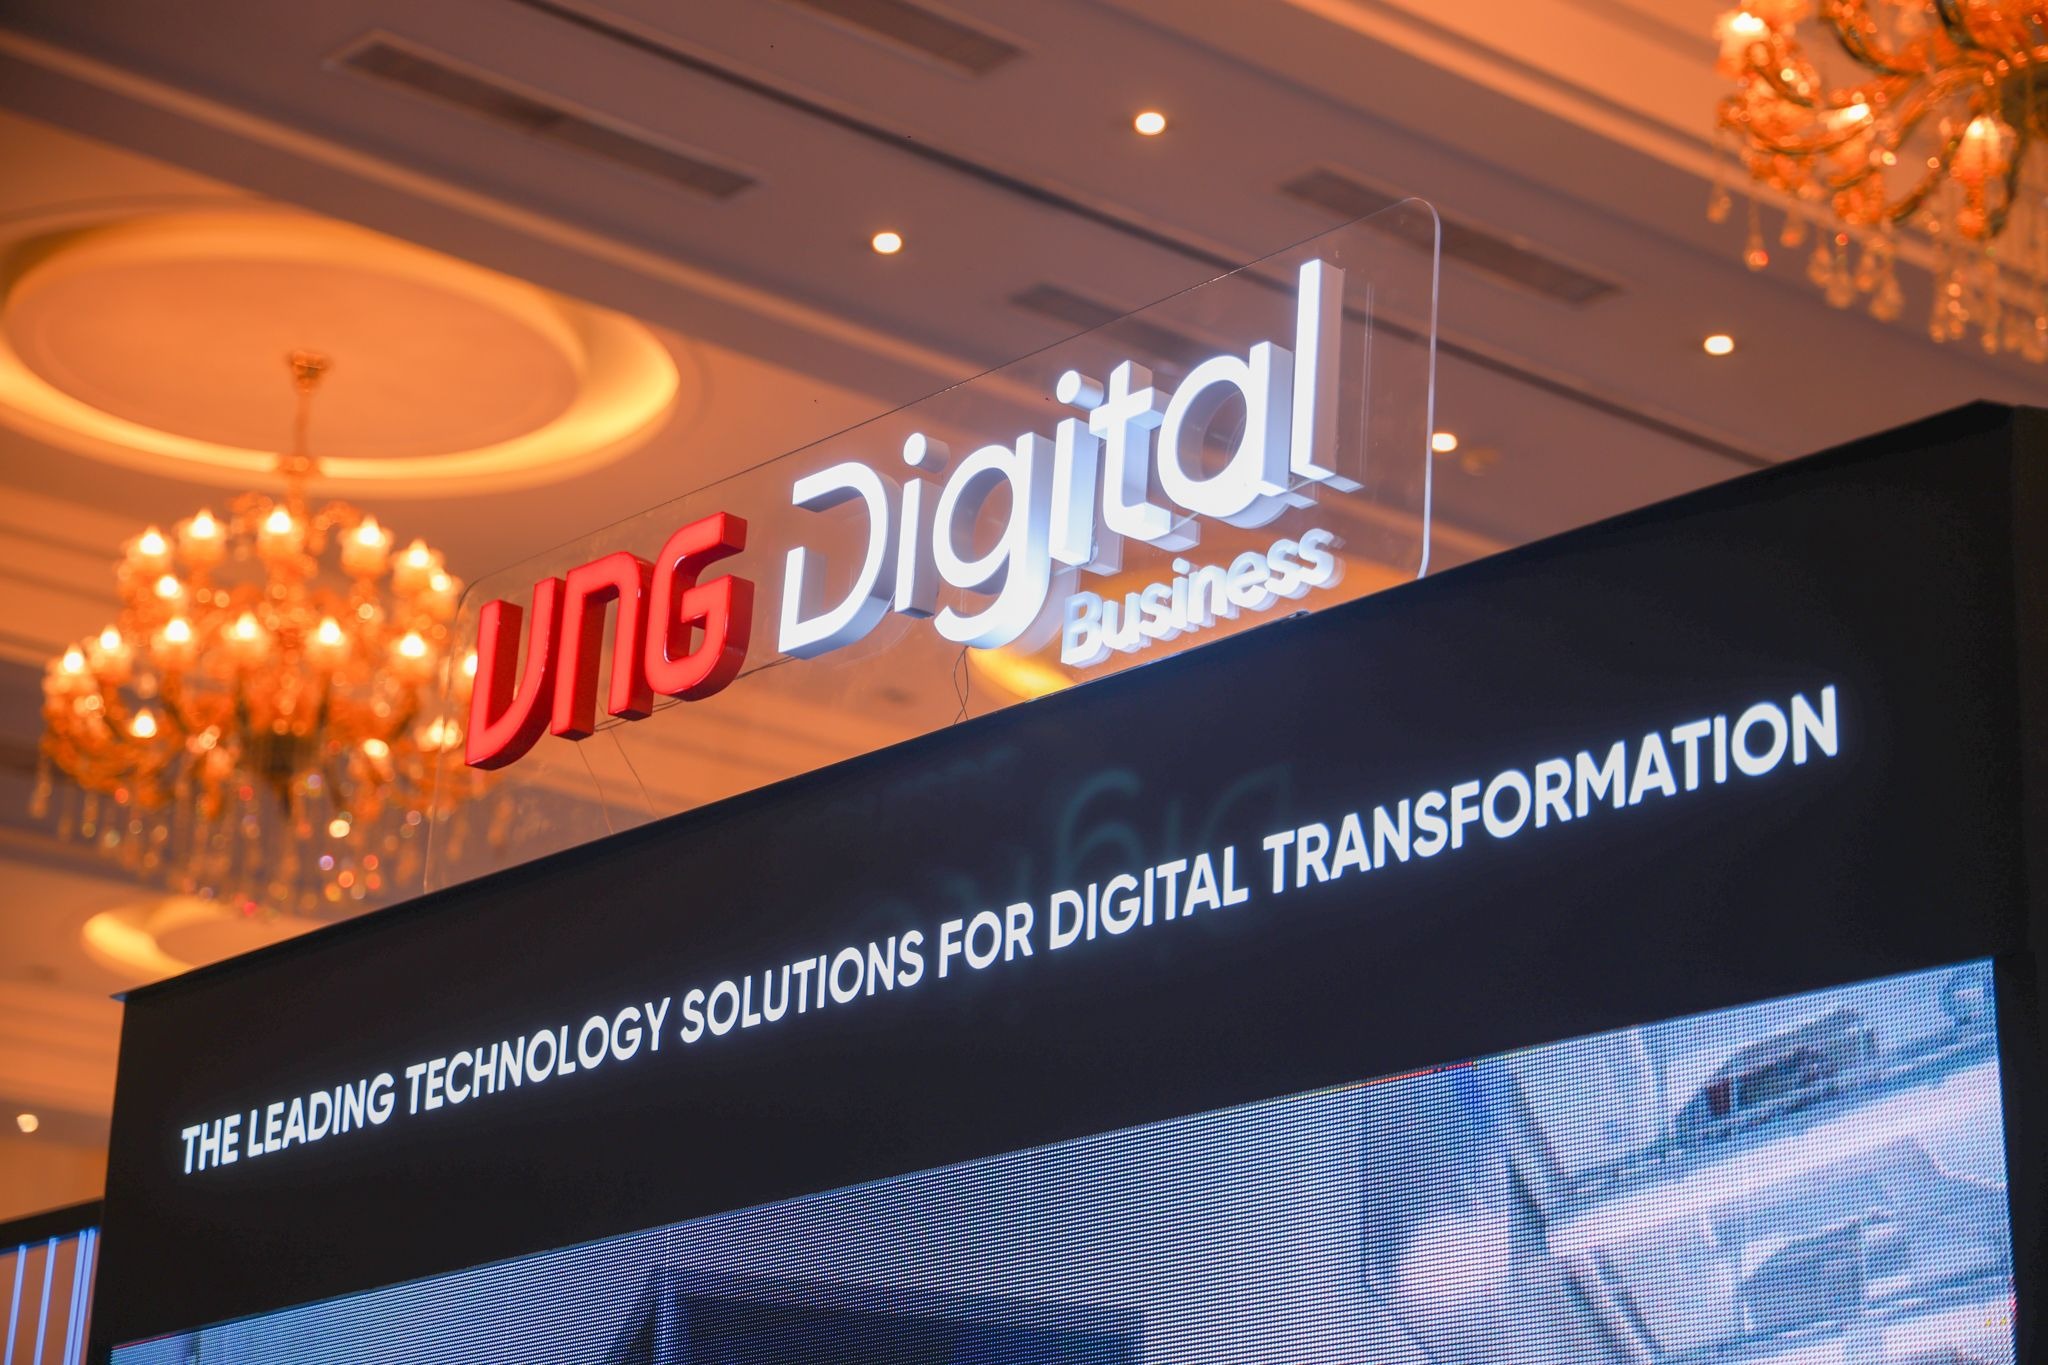 VNG Digital Business - giải pháp công nghệ hàng đầu cho chuyển đổi số